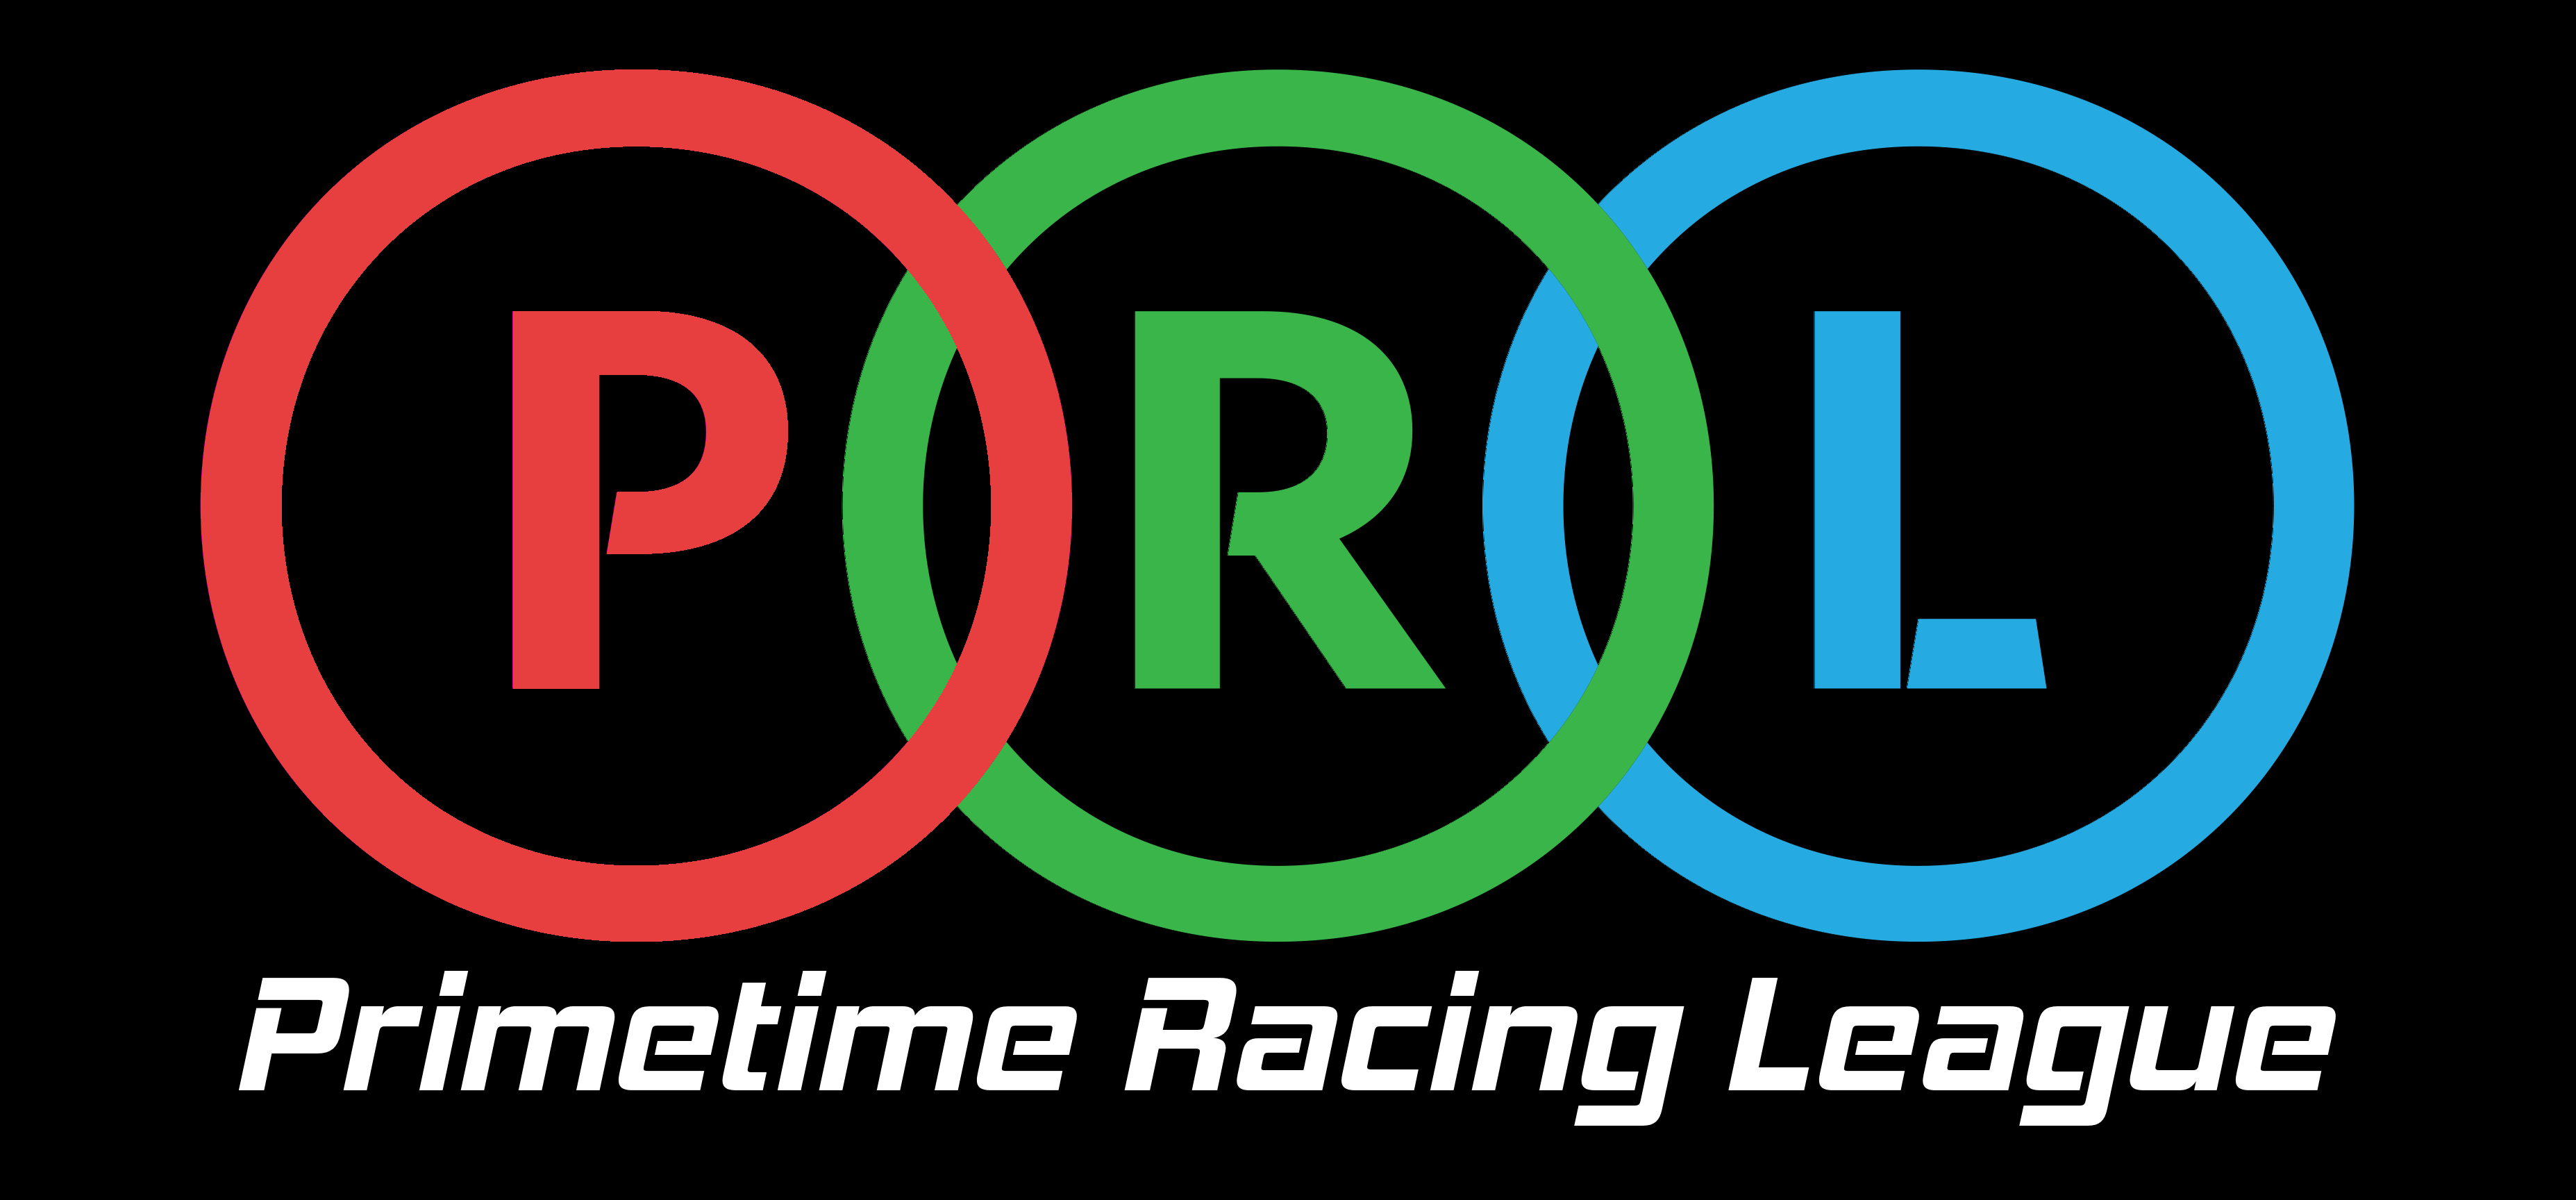 Primetime Racing League